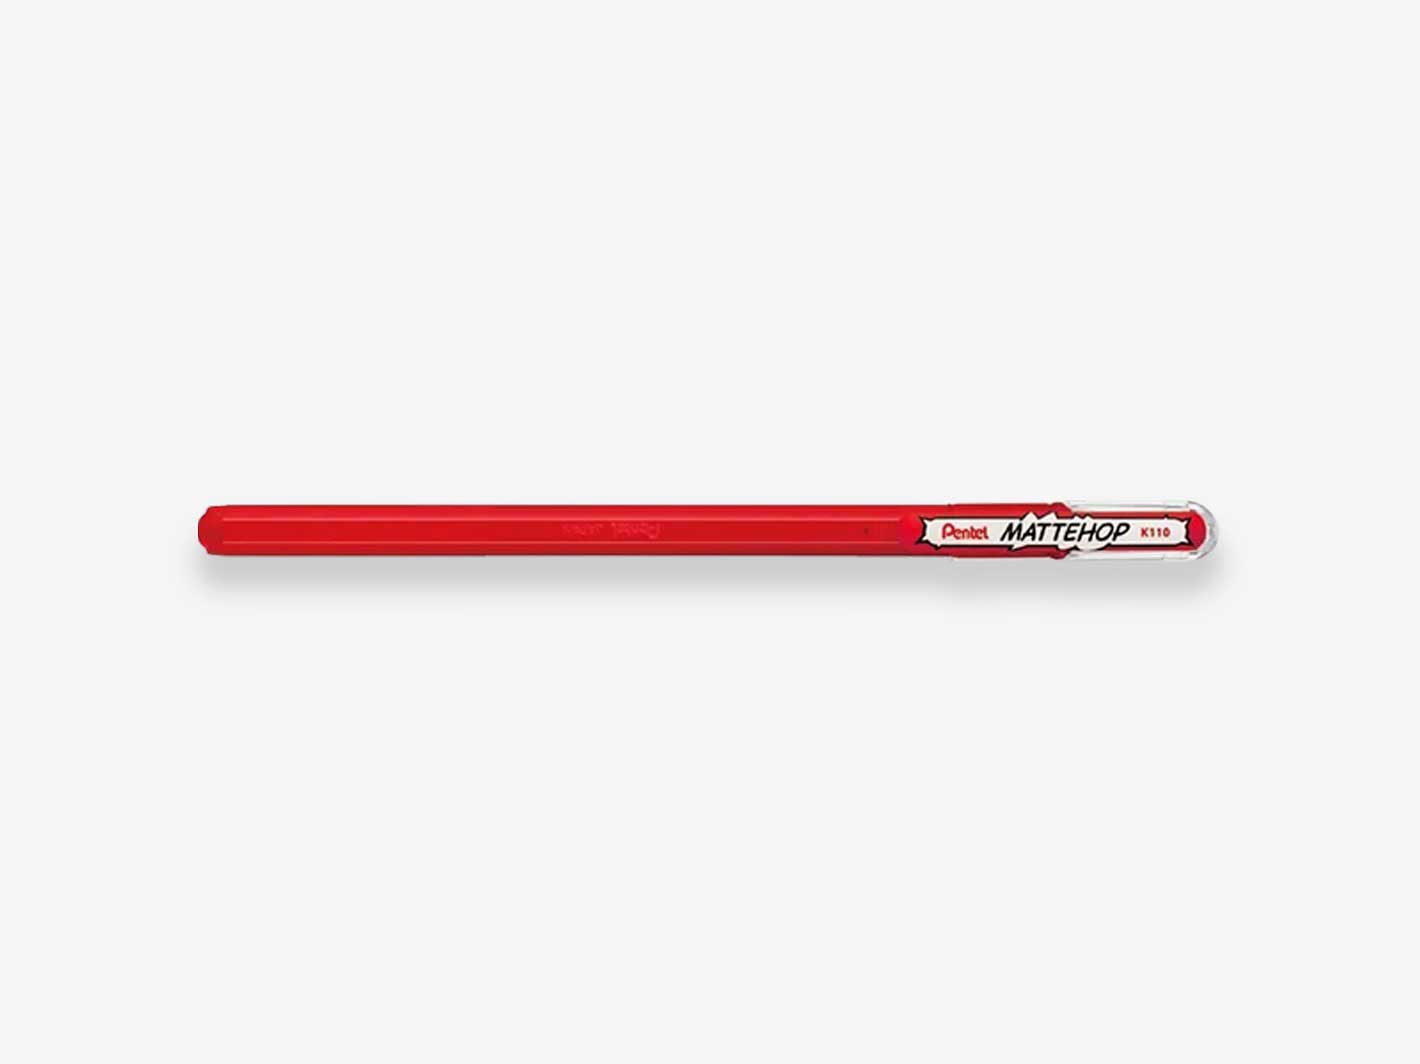 Mattehop Ballpoint Pen Red 1.0